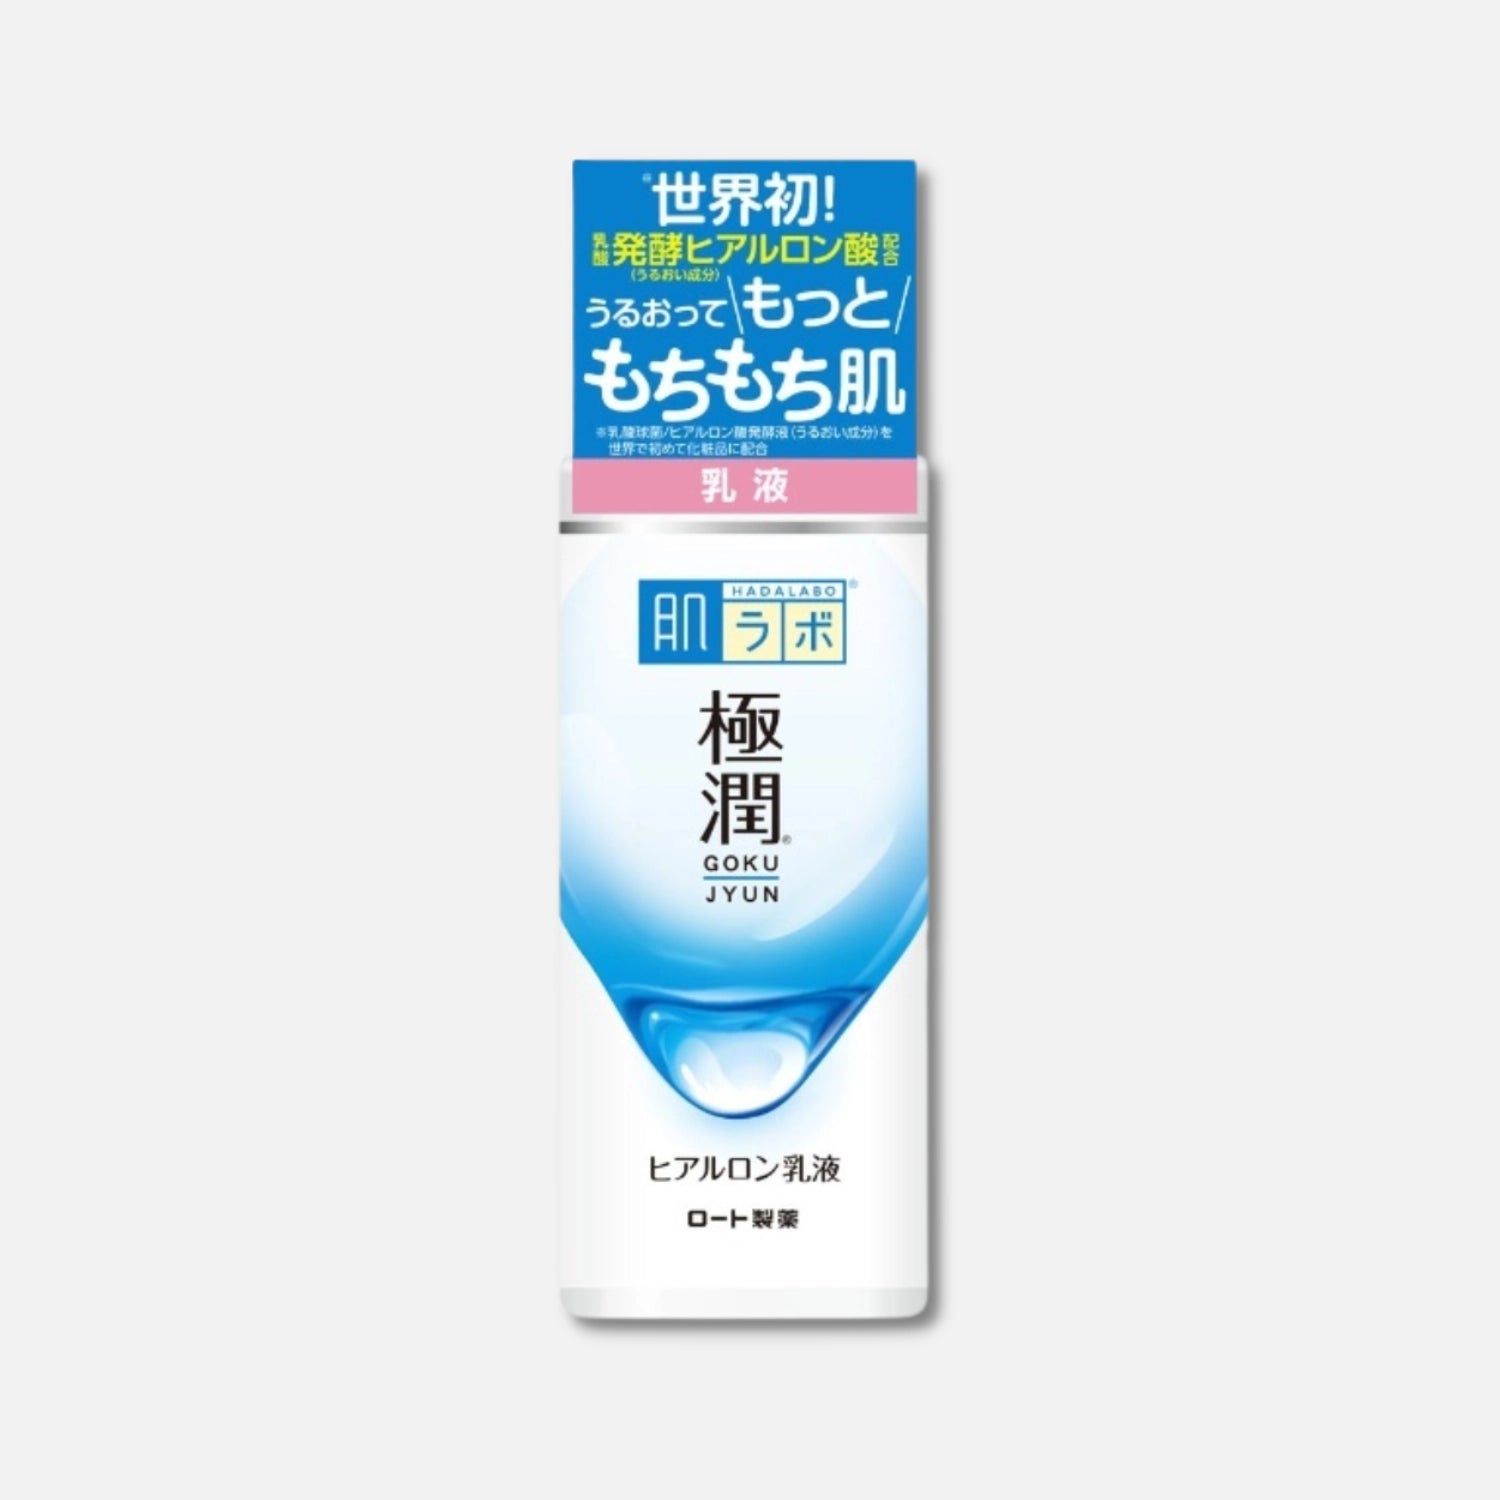 Hada Labo Milky Lotion 140ml - Buy Me Japan